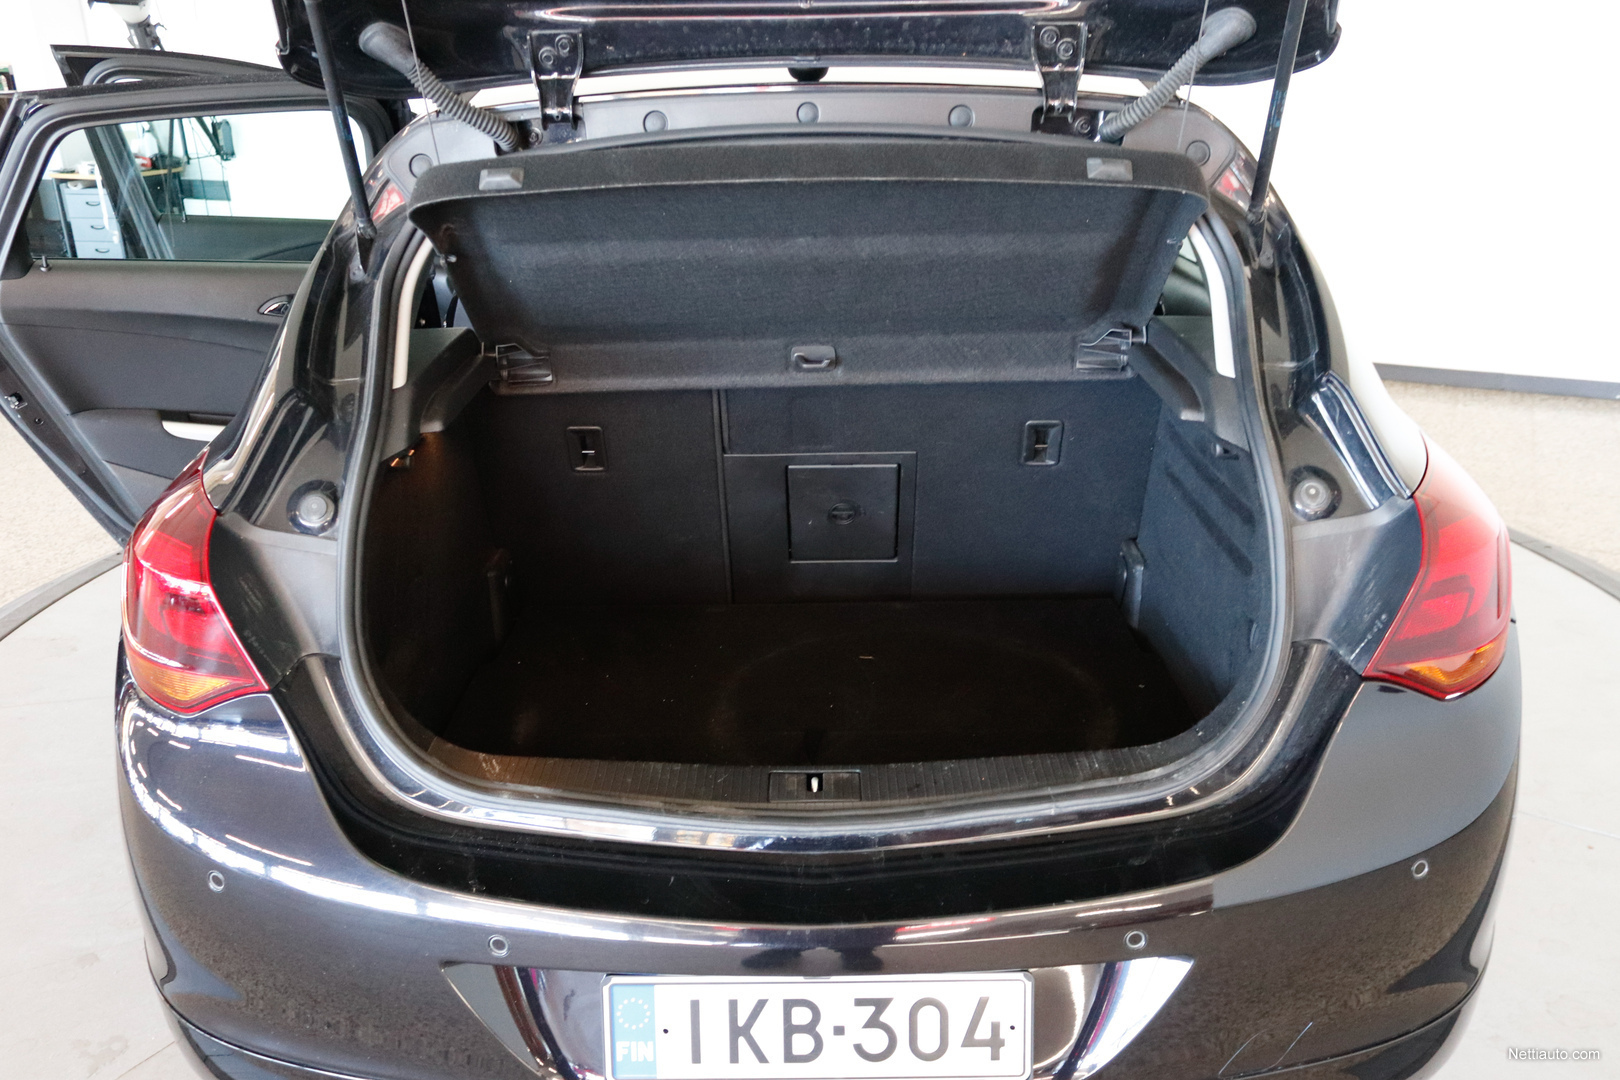 Opel Astra 5-ov Sport 1,6 Turbo Ecotec 132kW AT6 - Myydään korjattavaksi,  lue ilmoitus. Hatchback 2011 - Used vehicle - Nettiauto